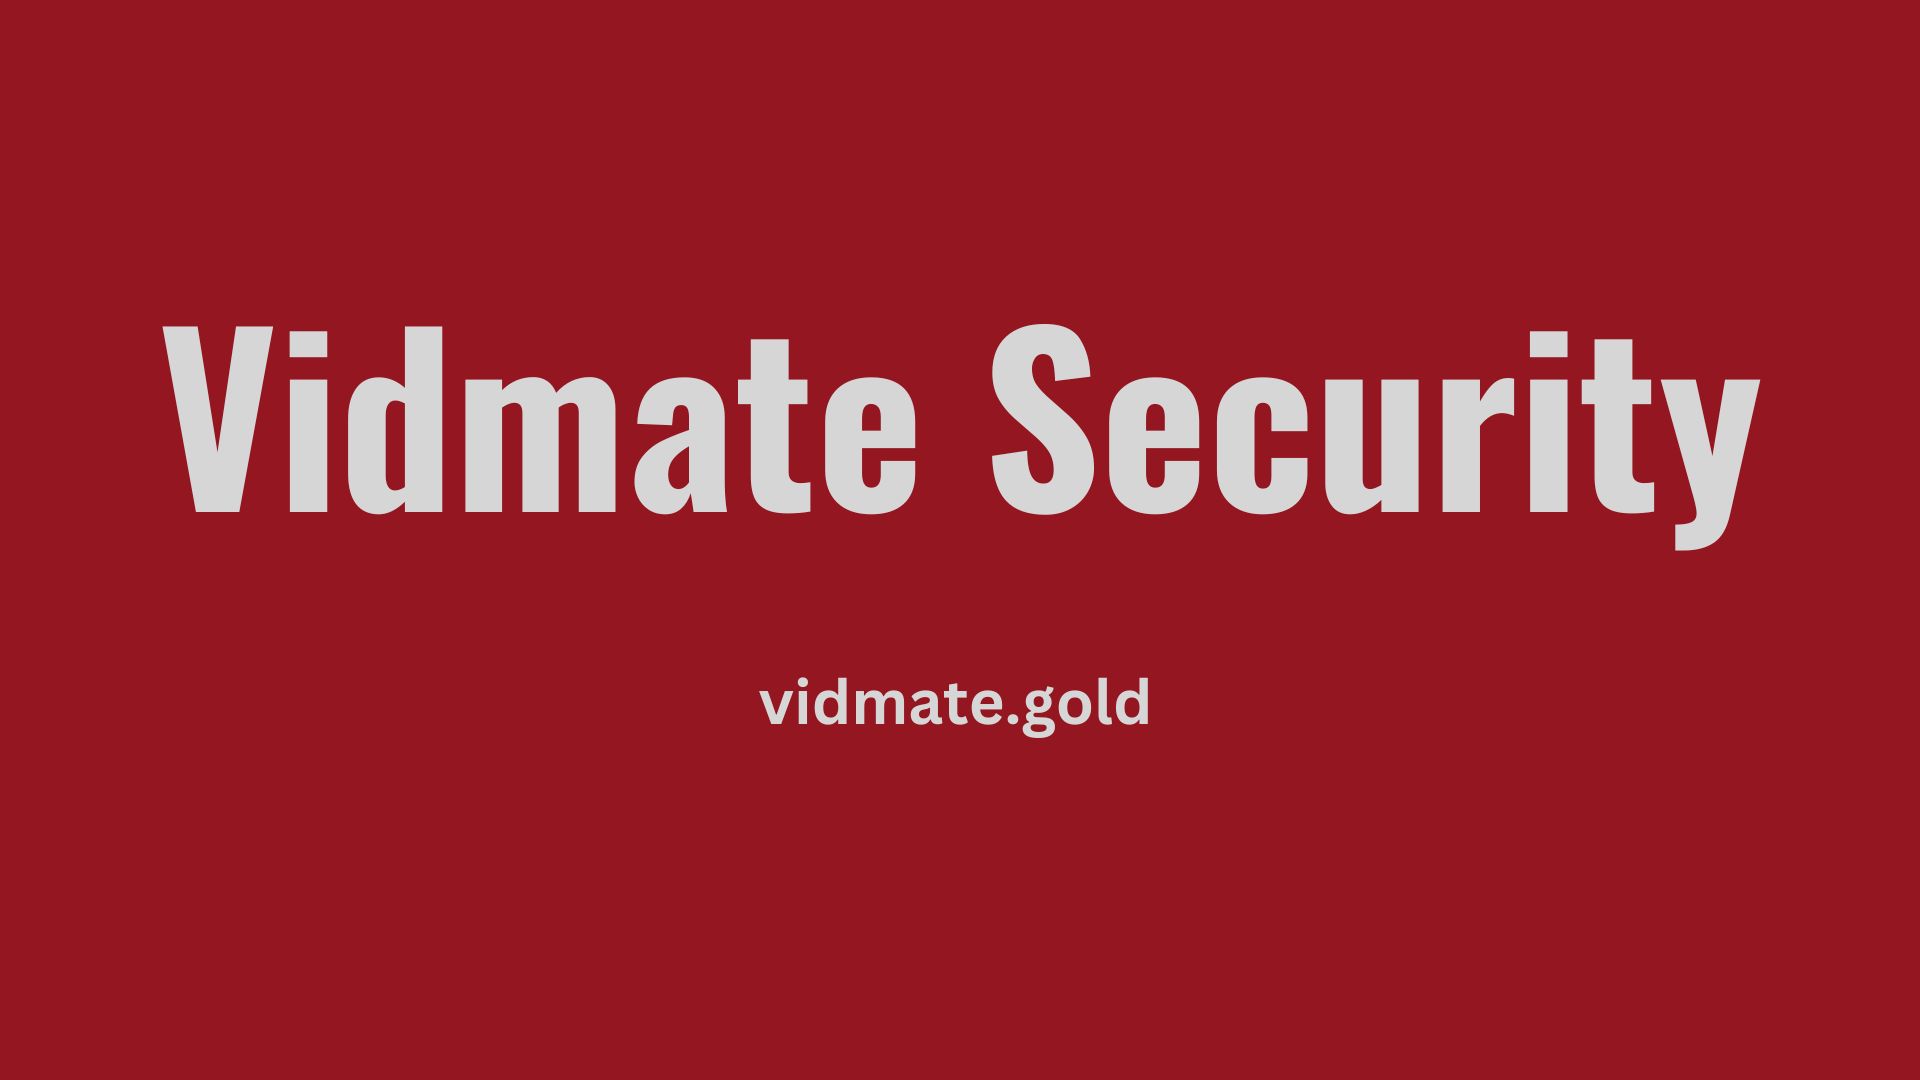 Vidmate Security